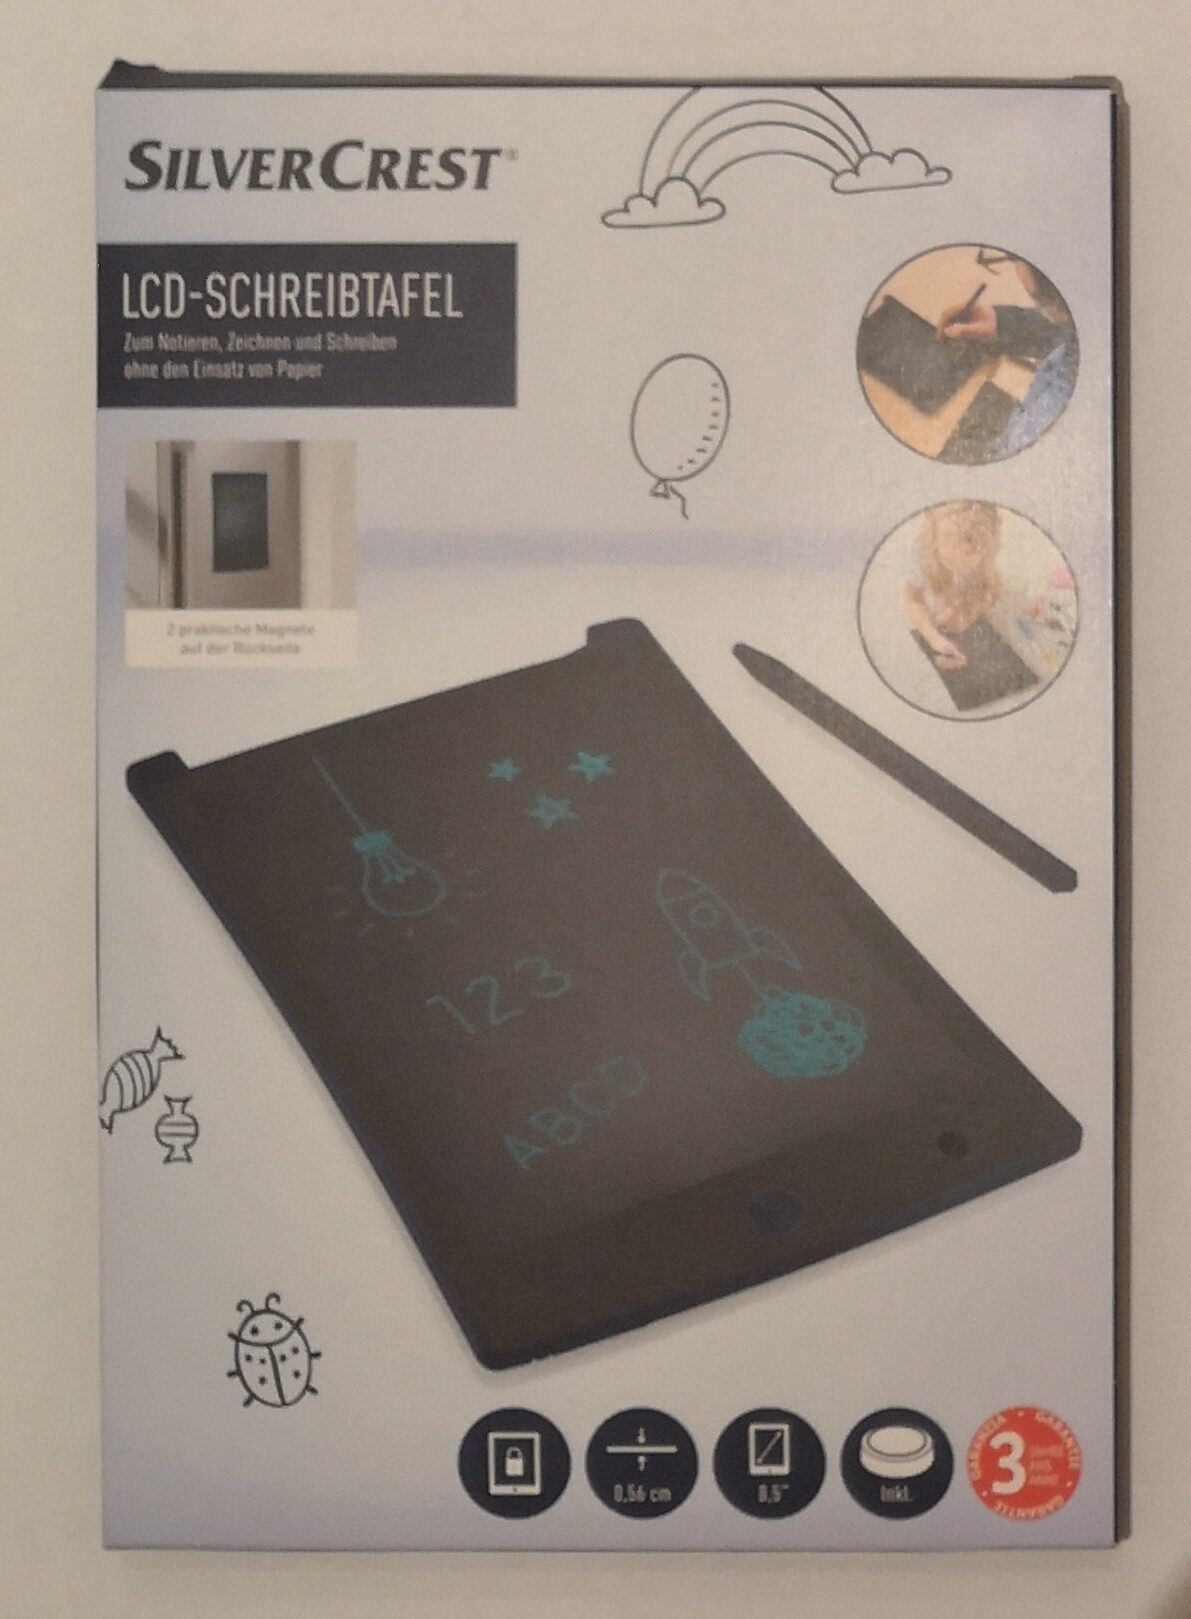 LCD-Schreibtafel - Product - de